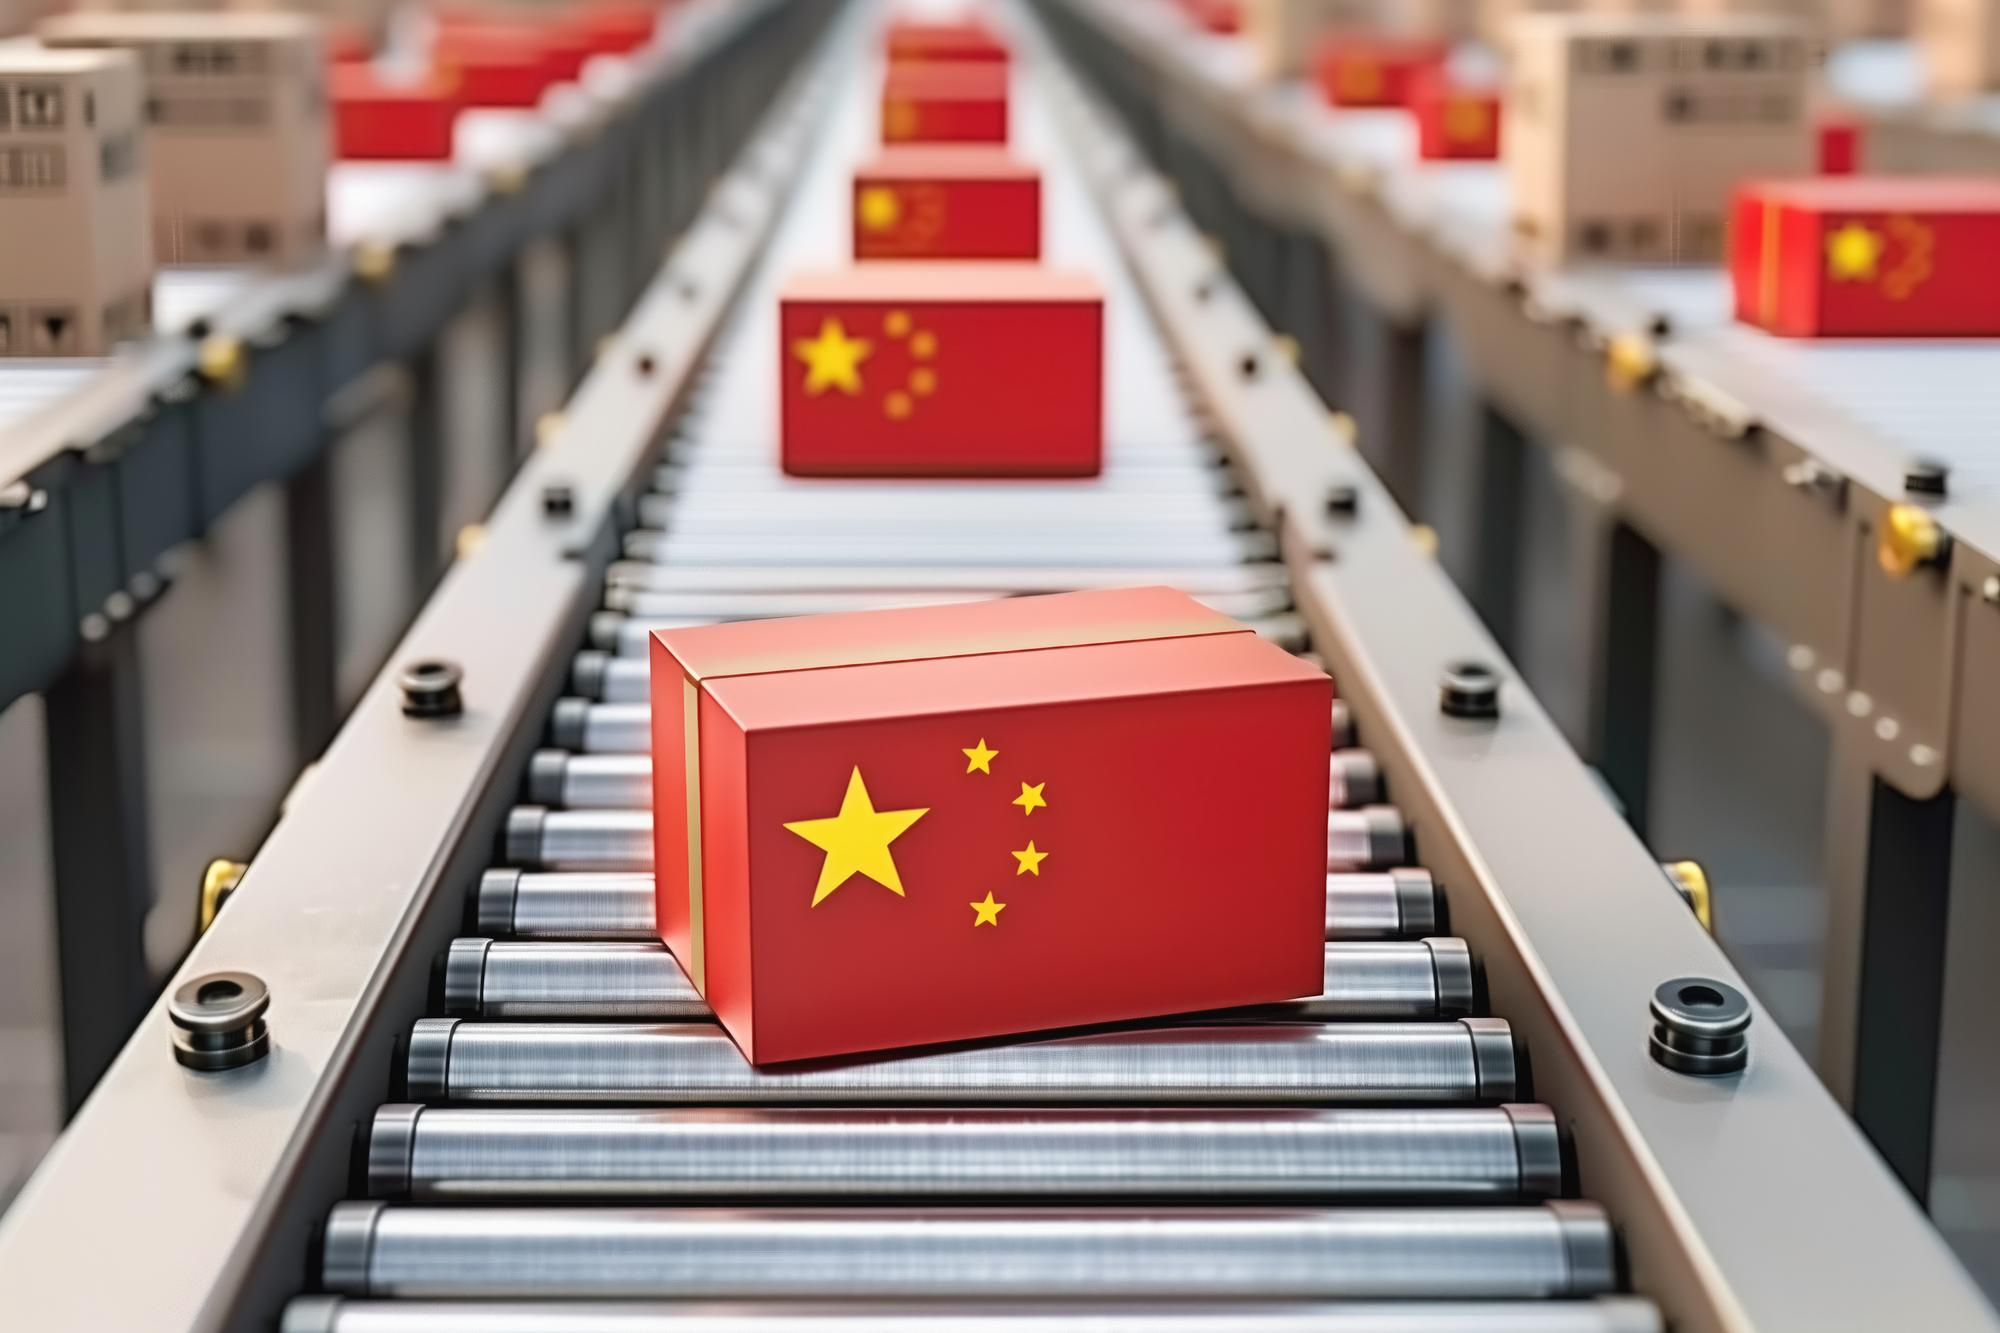 Come importare merci dalla Cina? Guida essenziale per imprenditori alle prime armi